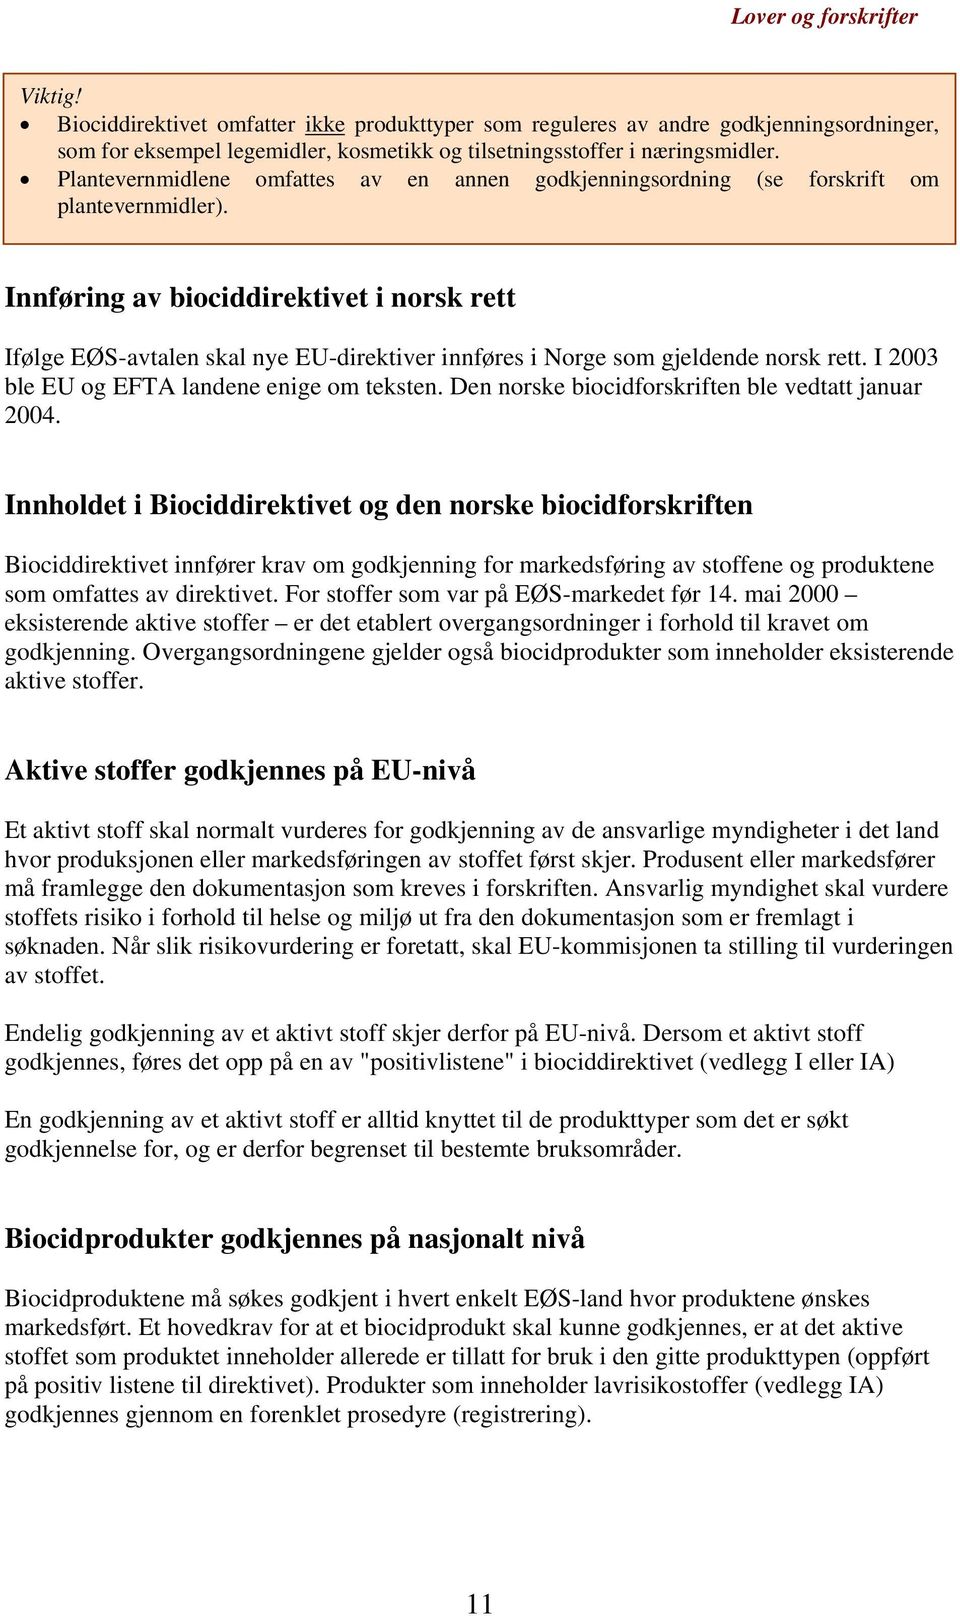 Innføring av biociddirektivet i norsk rett Ifølge EØS-avtalen skal nye EU-direktiver innføres i Norge som gjeldende norsk rett. I 2003 ble EU og EFTA landene enige om teksten.